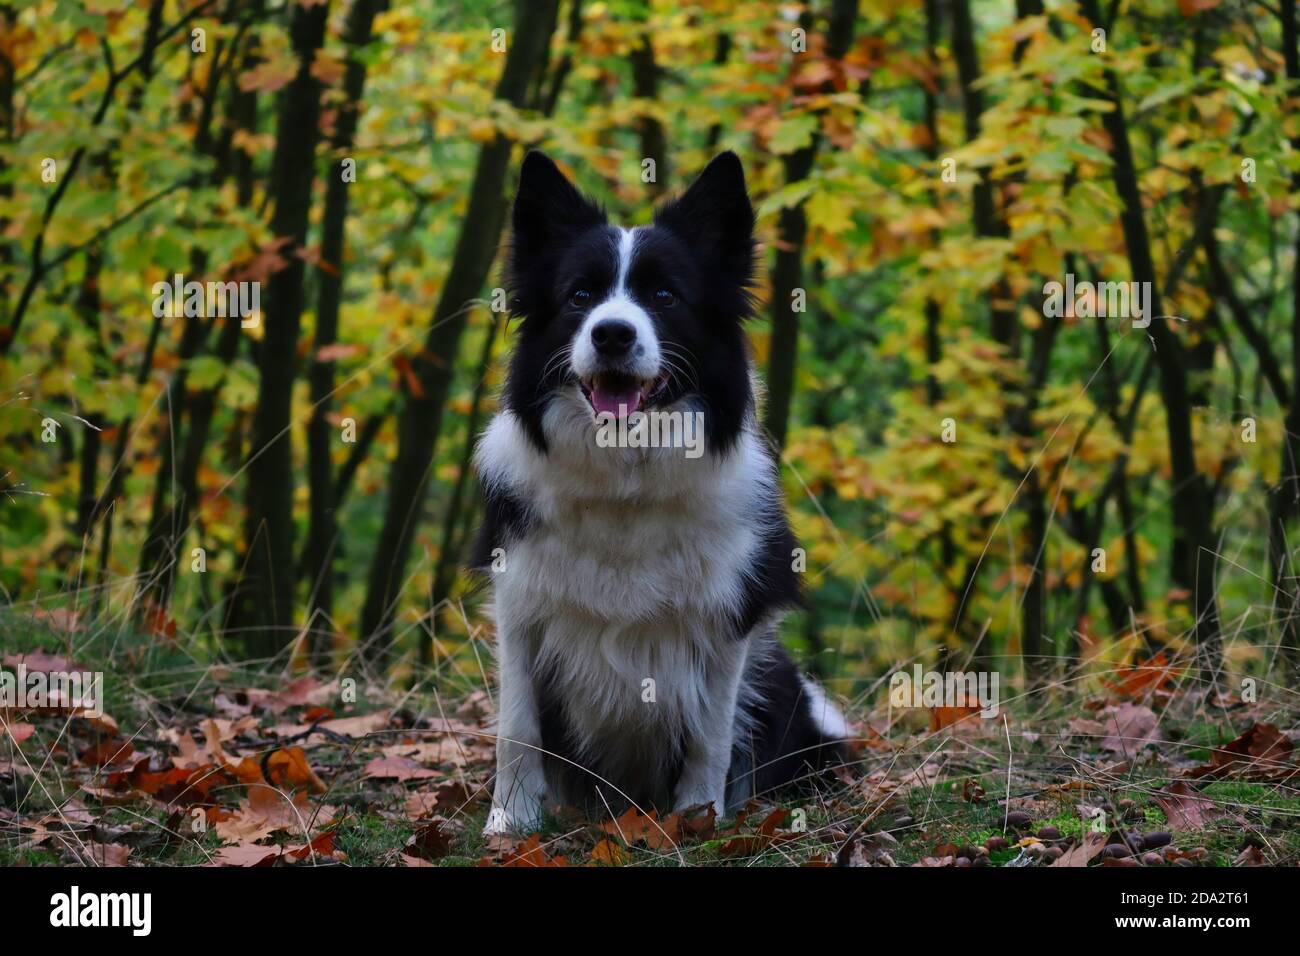 Liebenswert Border Collie sitzt in bunten Wald während der Herbstsaison. Herbststimmung mit glücklichen schwarzen und weißen Hund lächelt in der Natur. Stockfoto